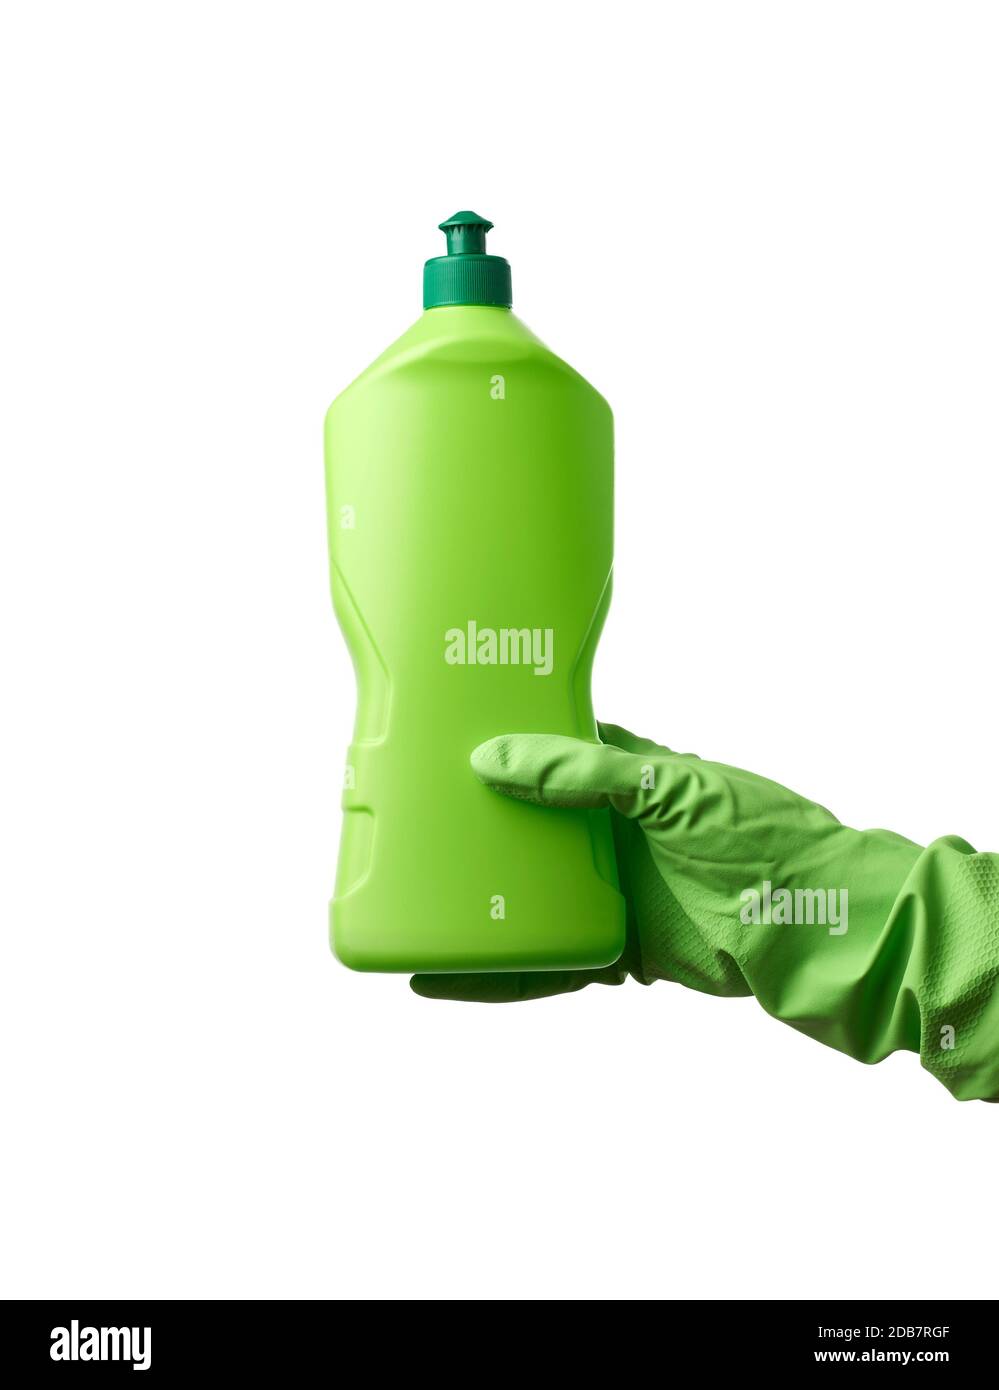 mano femenina en guantes de goma sostiene una botella de plástico verde con  detergente para lavar platos y cosas en casa, el artículo está aislado  sobre un fondo blanco Fotografía de stock -